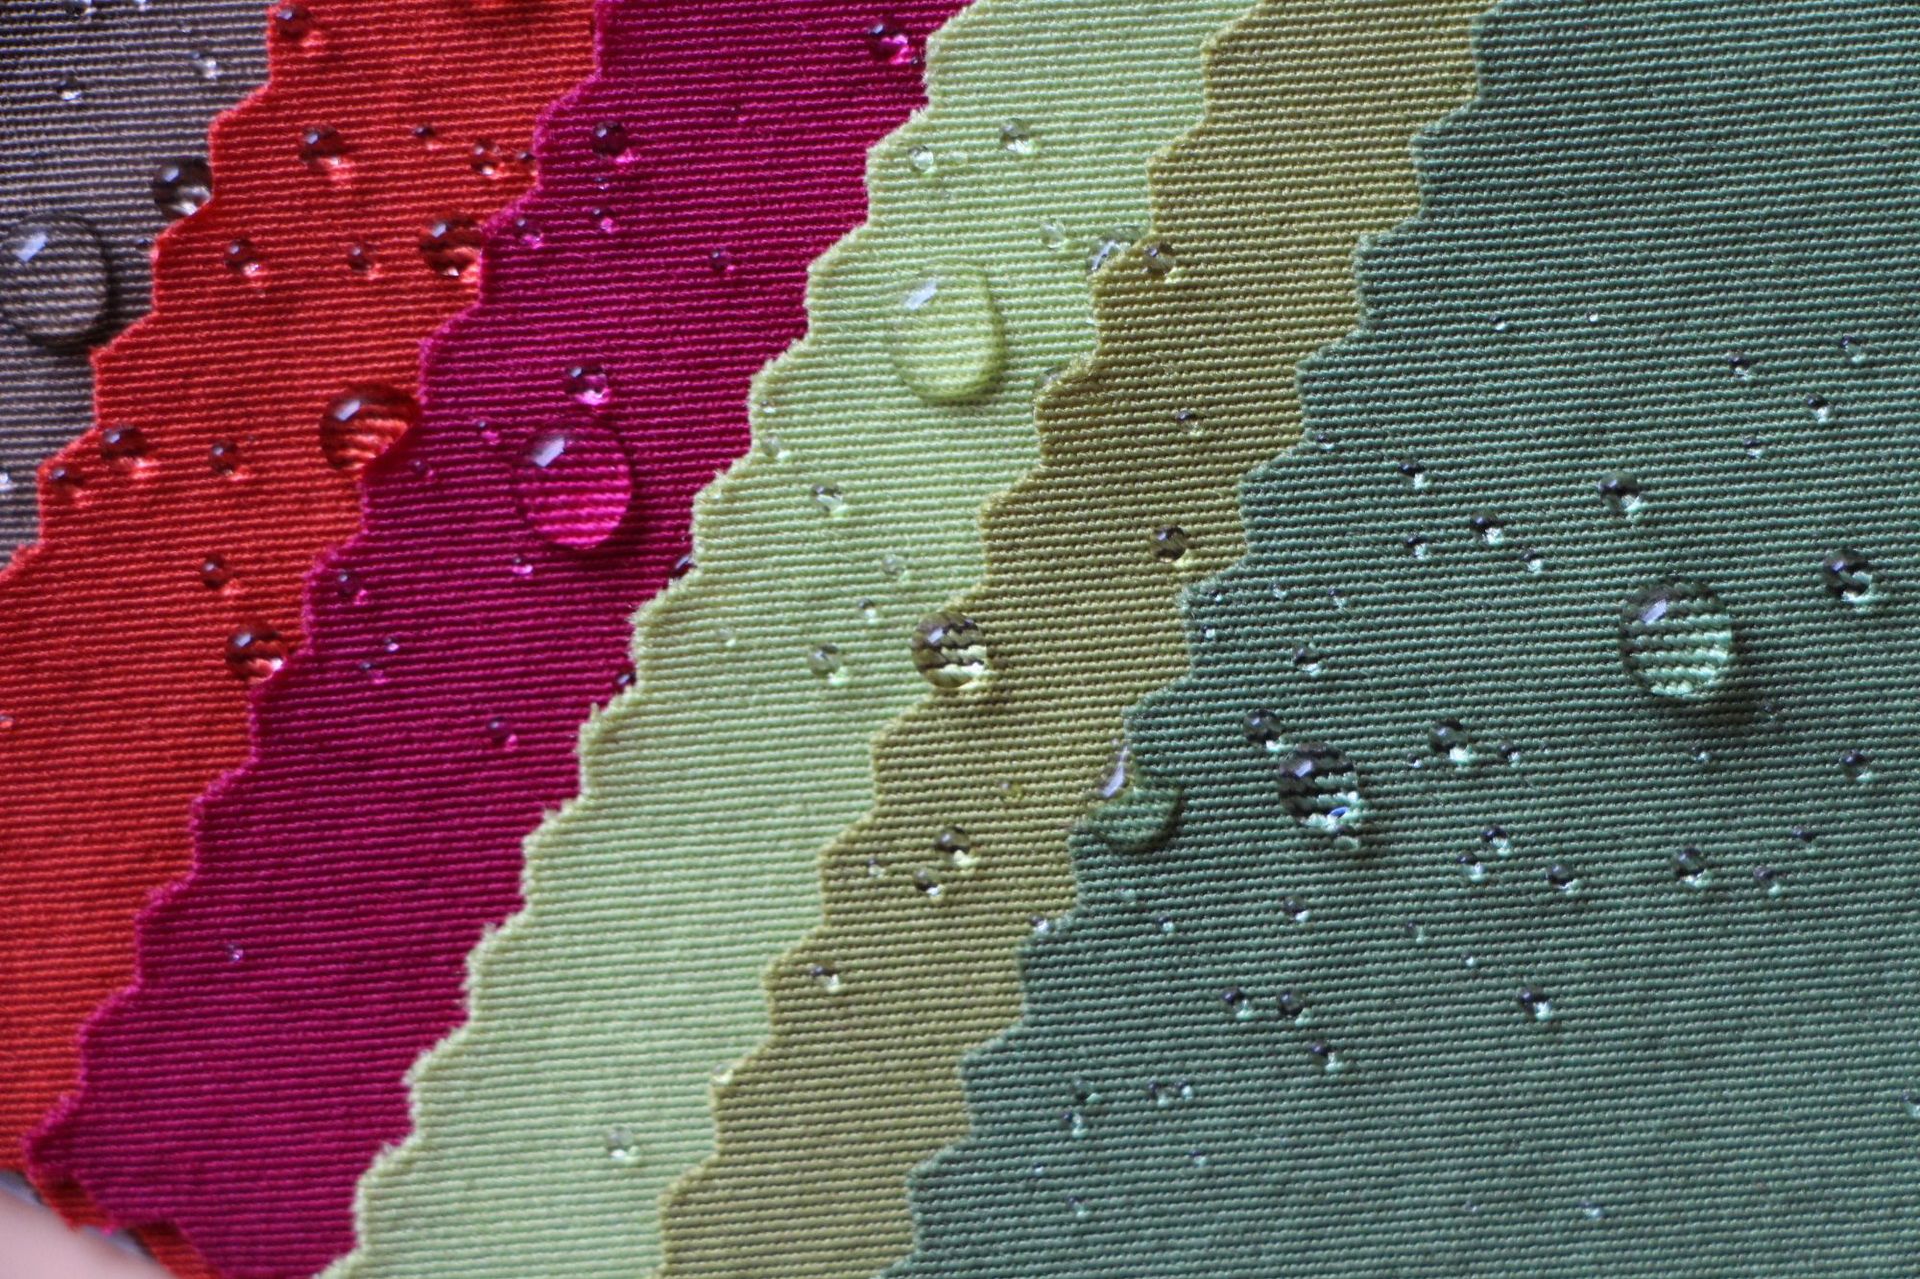 Comprensión de los tejidos impermeables: tipos y beneficios